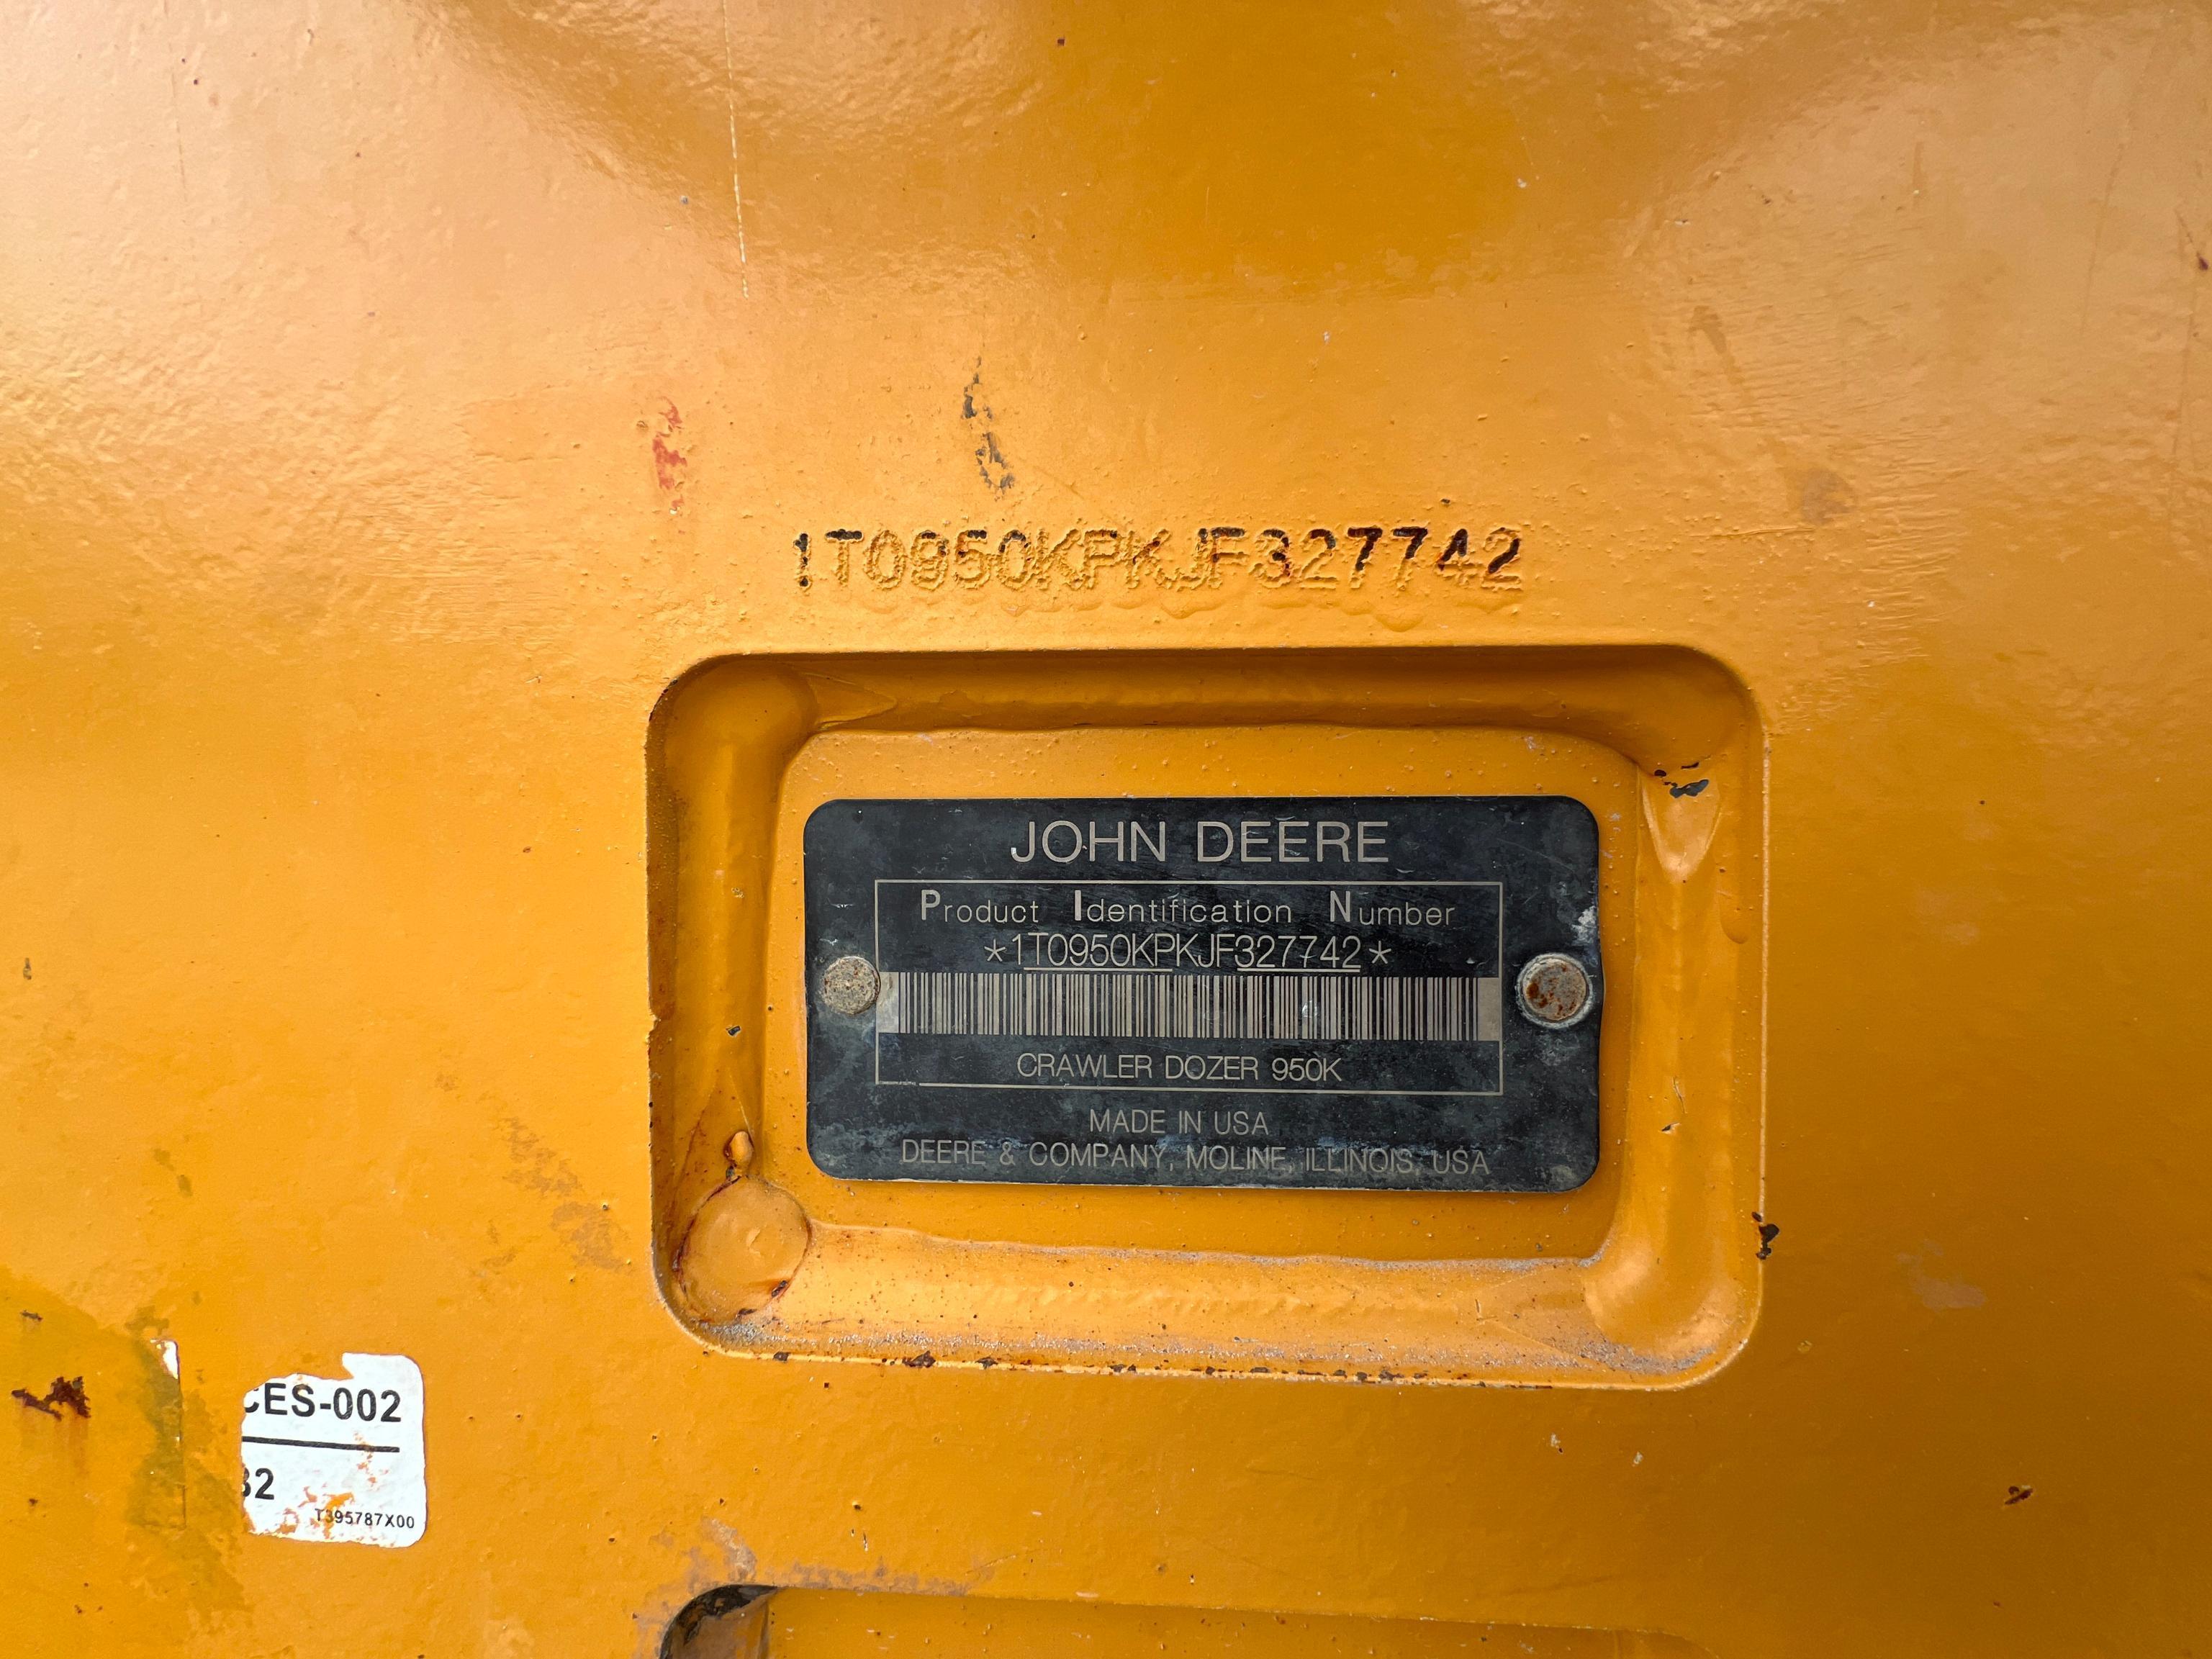 2018 JOHN DEERE 950K CRAWLER TRACTOR SN:1T0950KPKJF327742 powered by John Deere diesel engine,